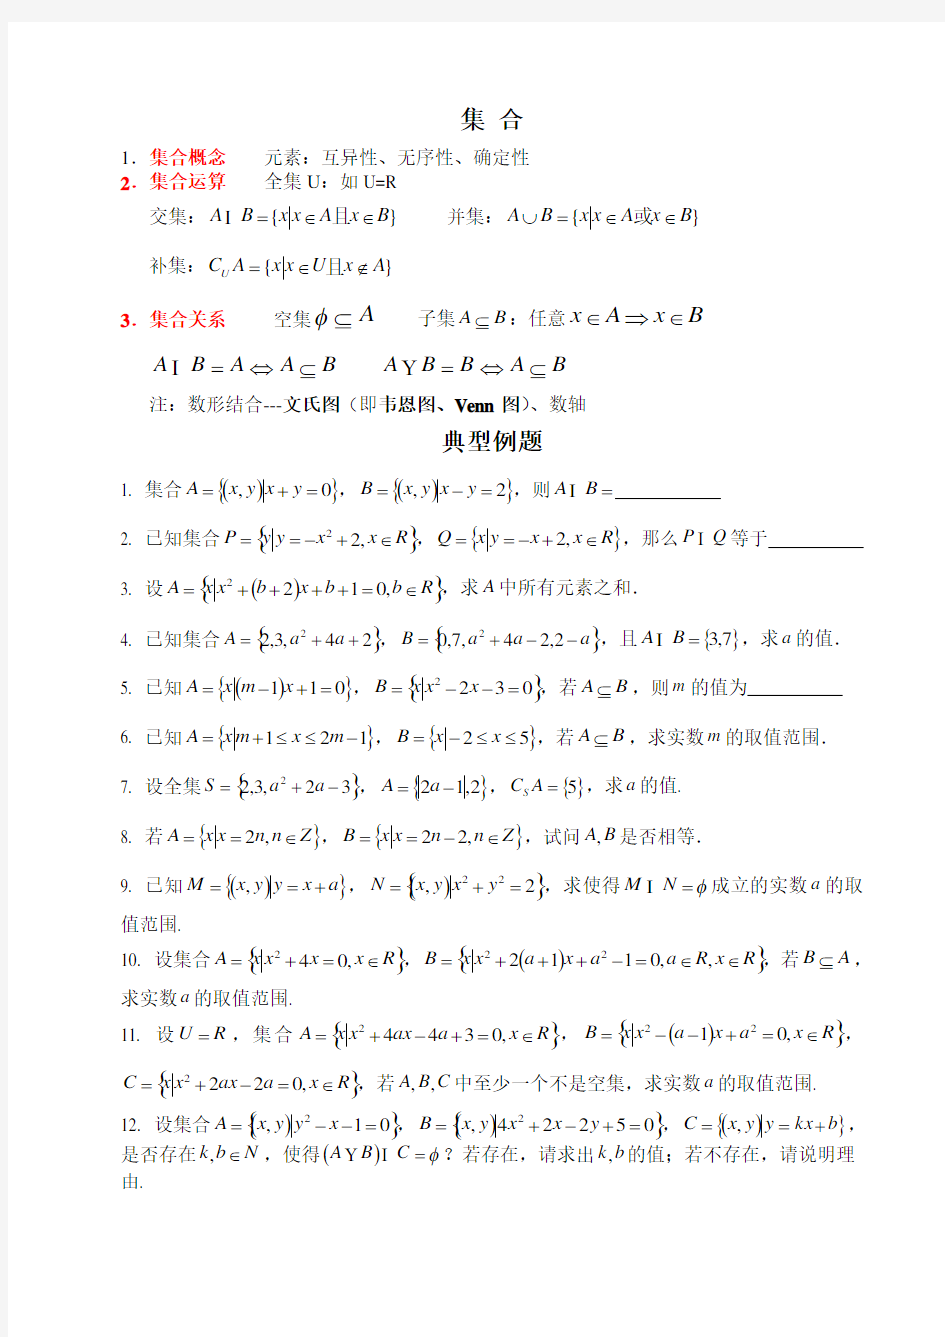 高中数学集合典型例题